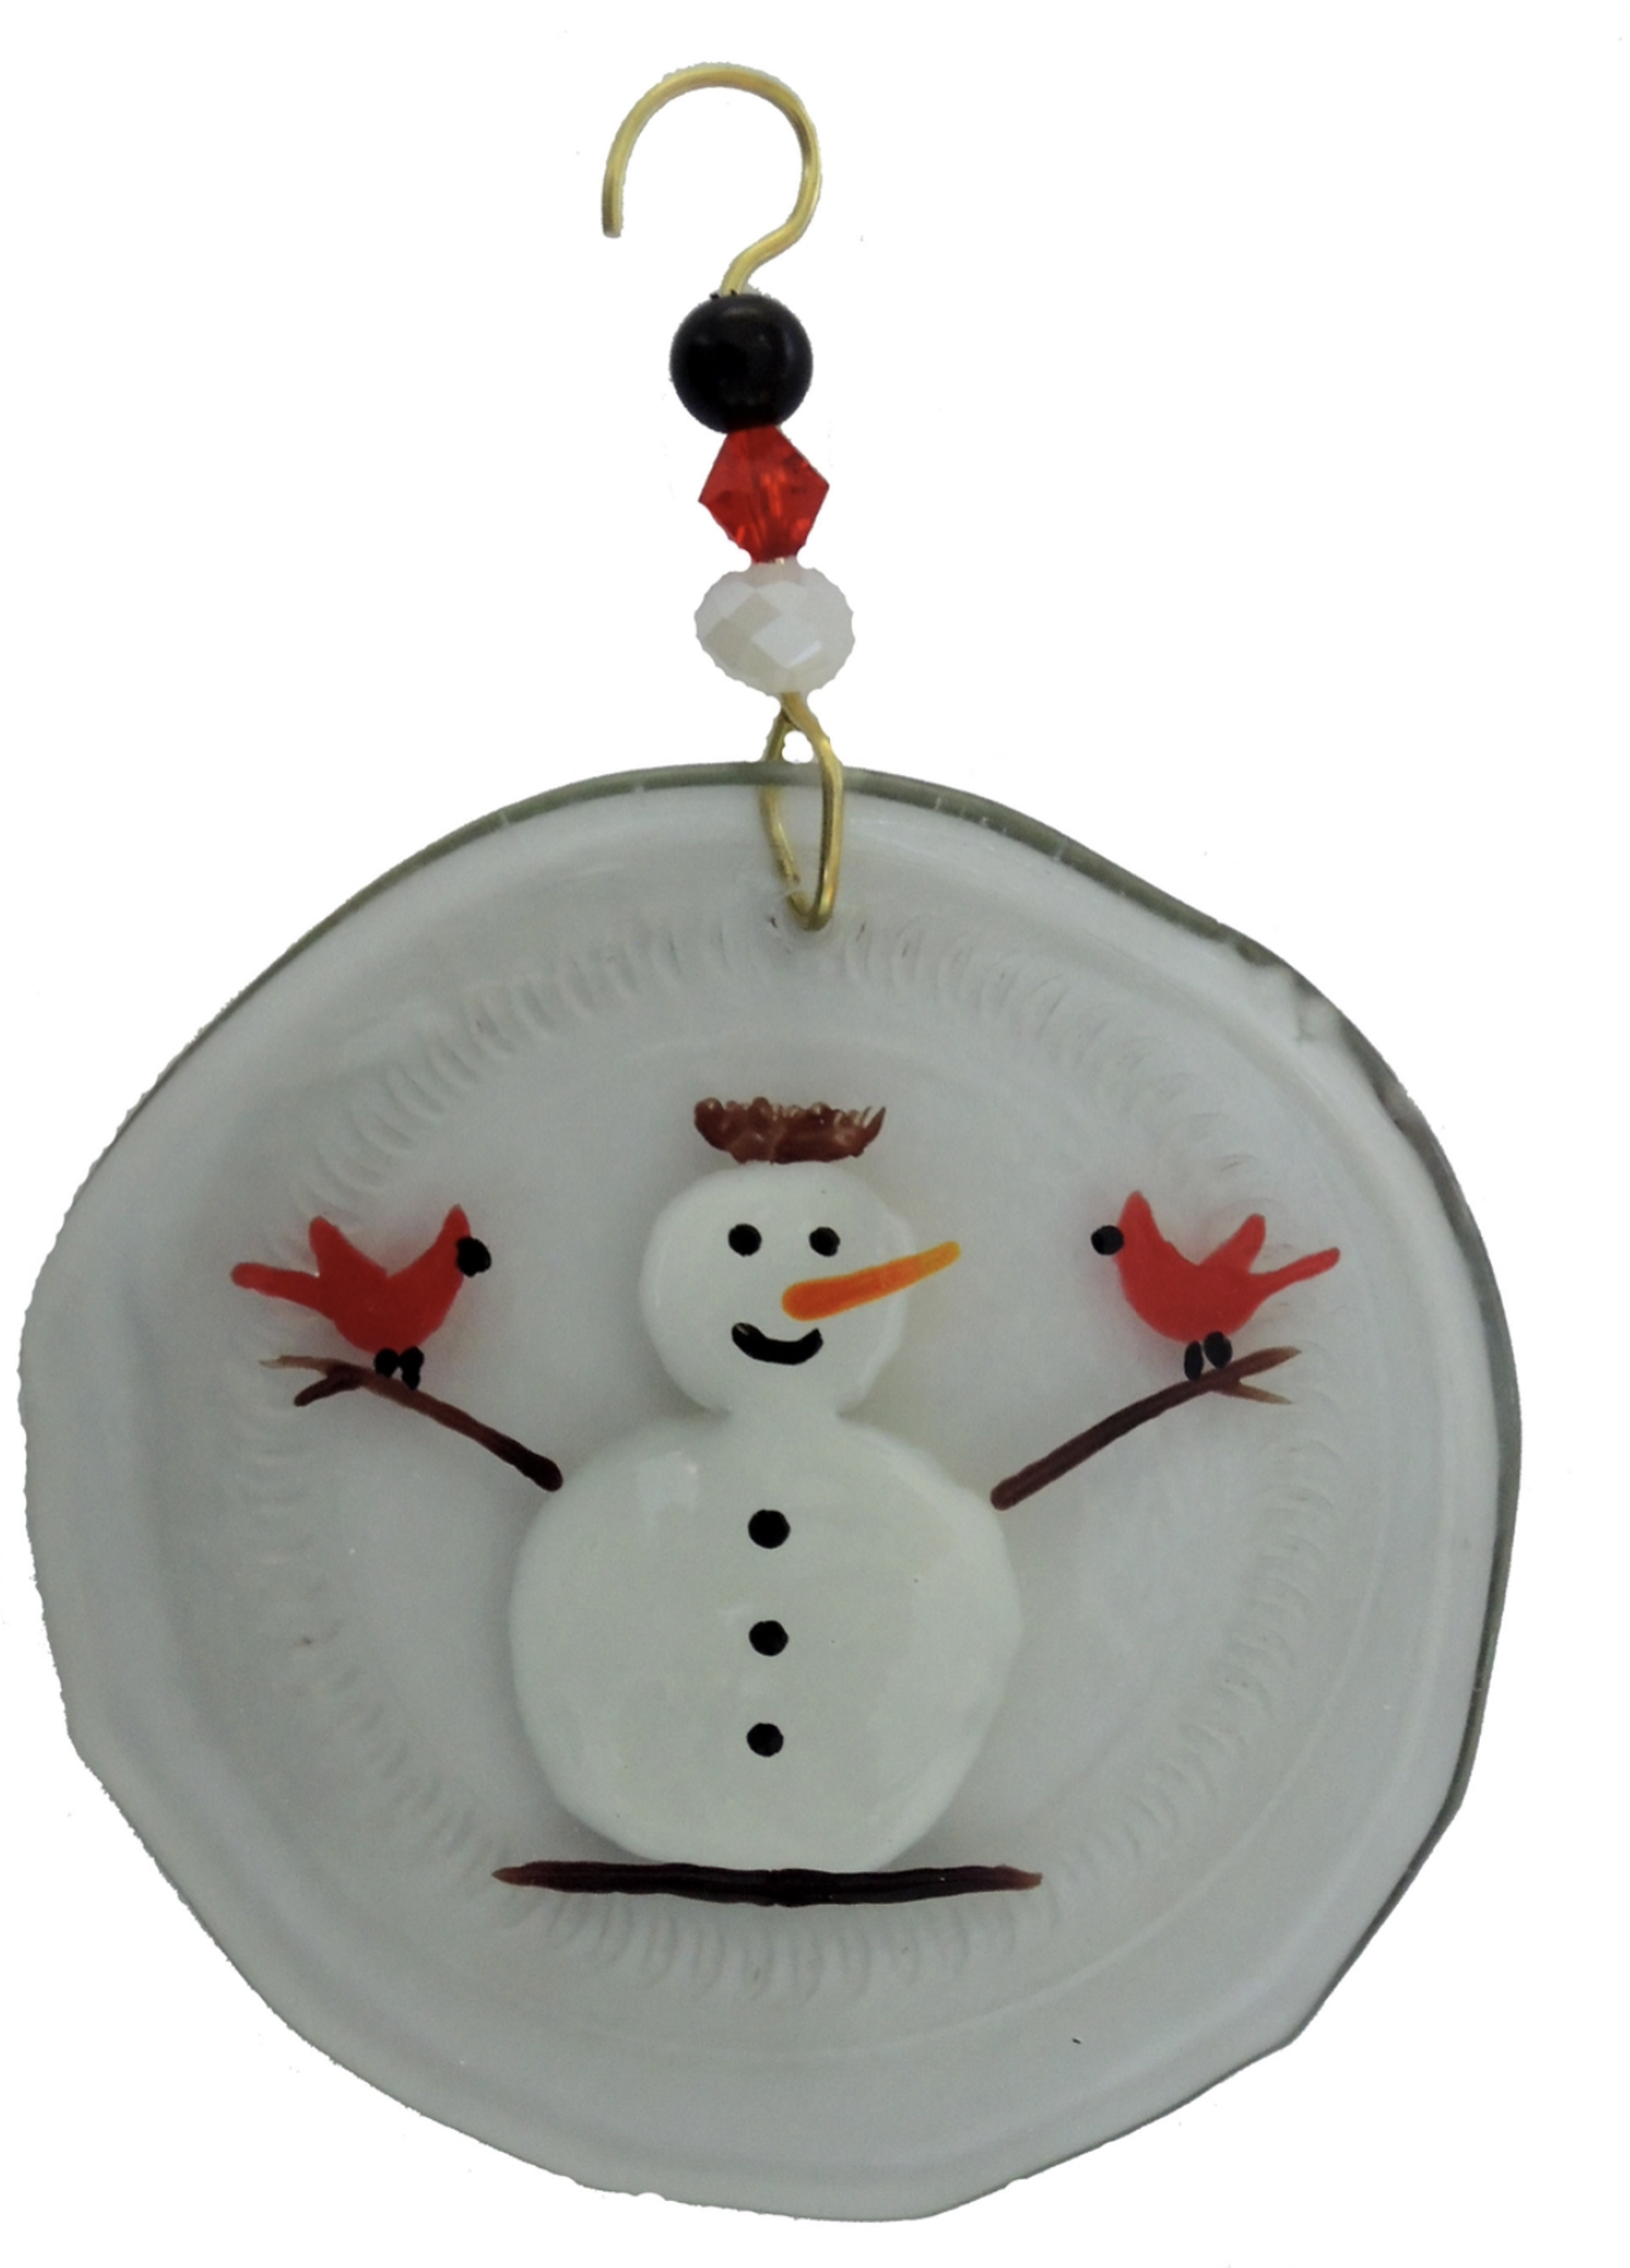 Ornament - Snowman, Redbird & Nest by Wine Bottle Art